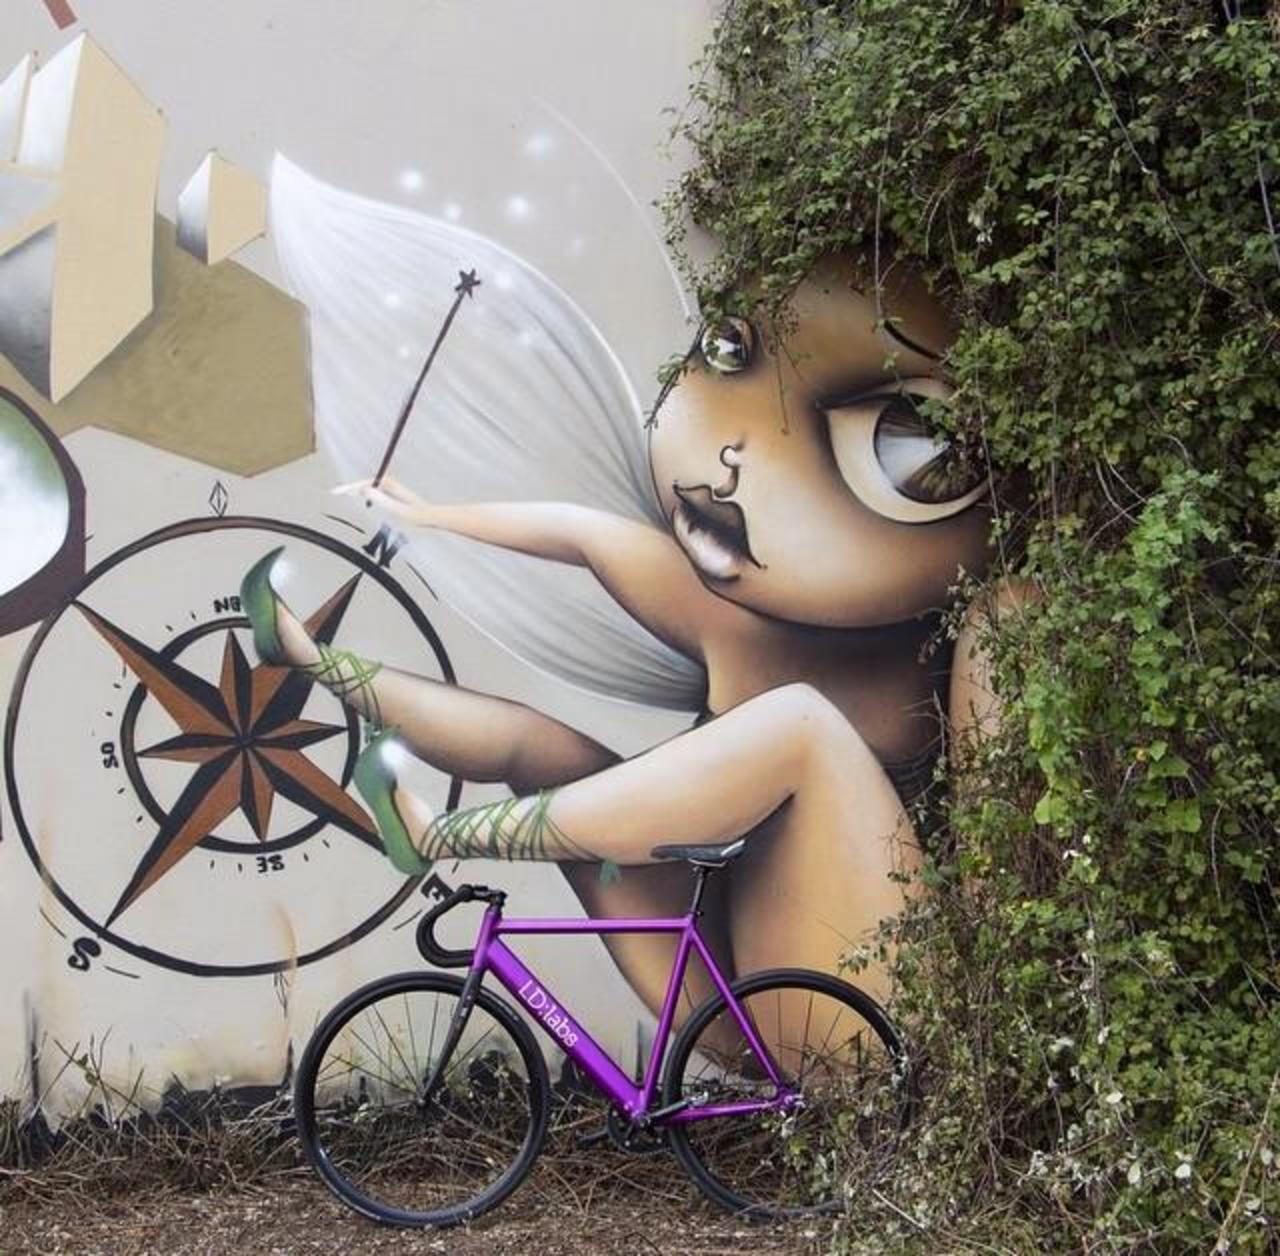 RT @GoogleStreetArt: New fun nature & Street Art Wall by @viniegraffiti 

#art #mural #graffiti #streetart http://t.co/vP8glrHd5F